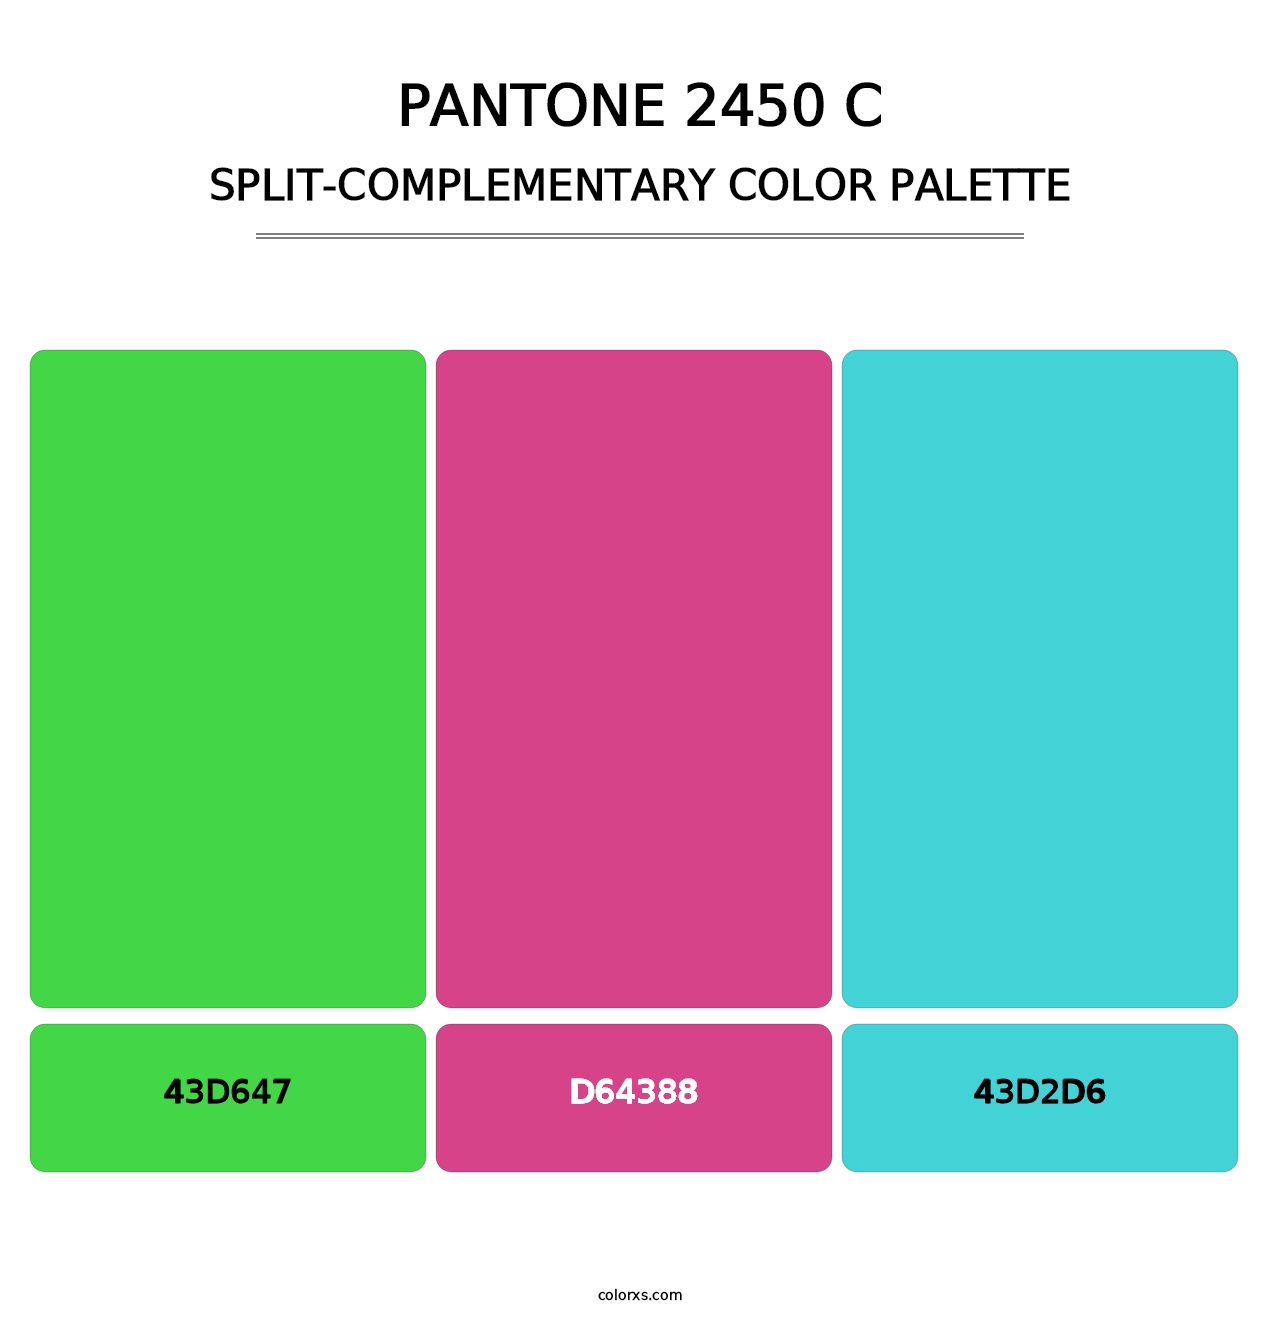 PANTONE 2450 C - Split-Complementary Color Palette